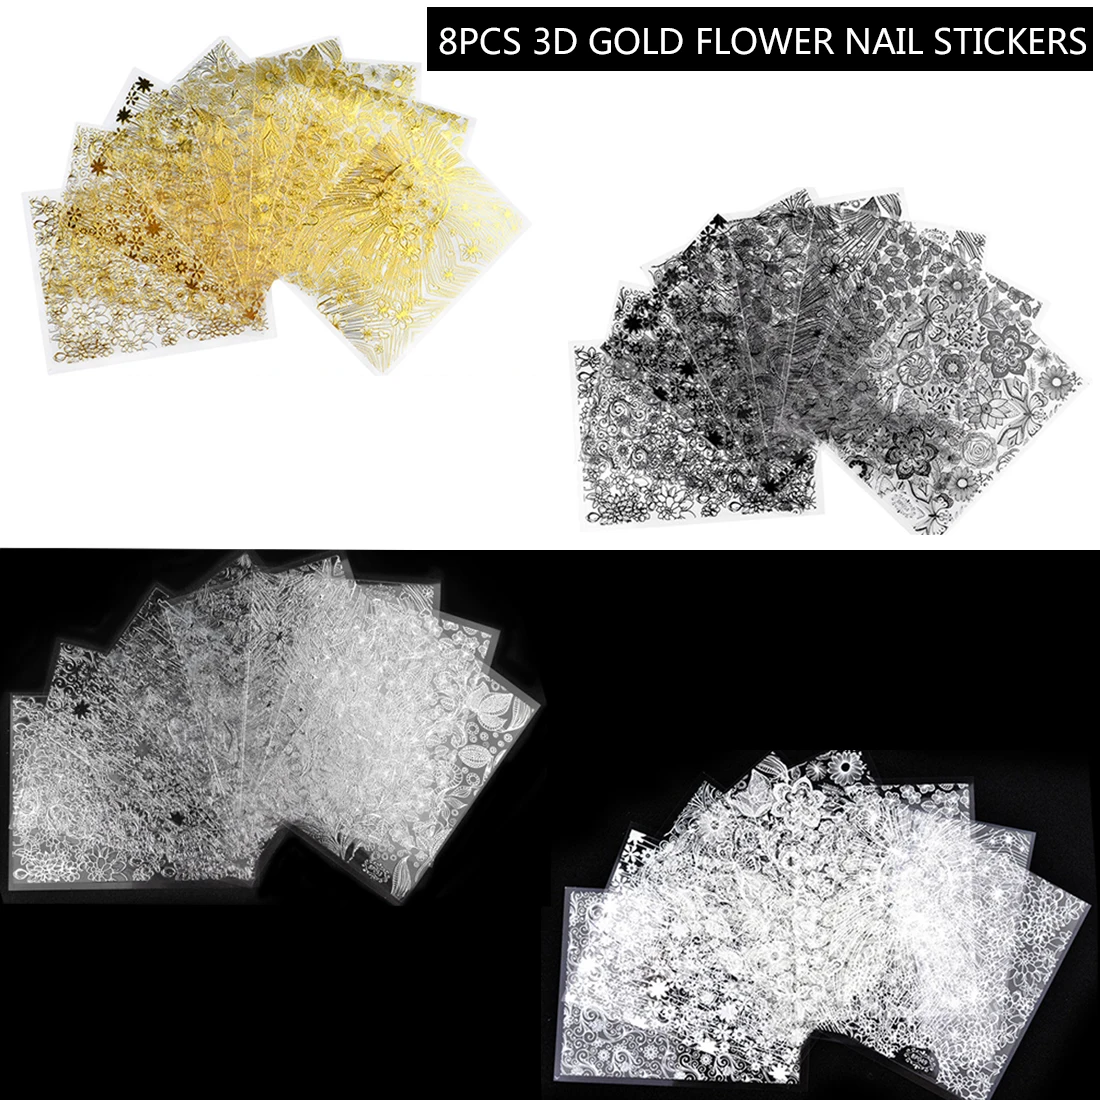 4 цвета, Цветущий цветок, стикеры 3D на ногти Nail Art Наклейки, красивые наклейки, 8 листов/набор, рельефные 3D наклейки для ногтей с золотыми цветами